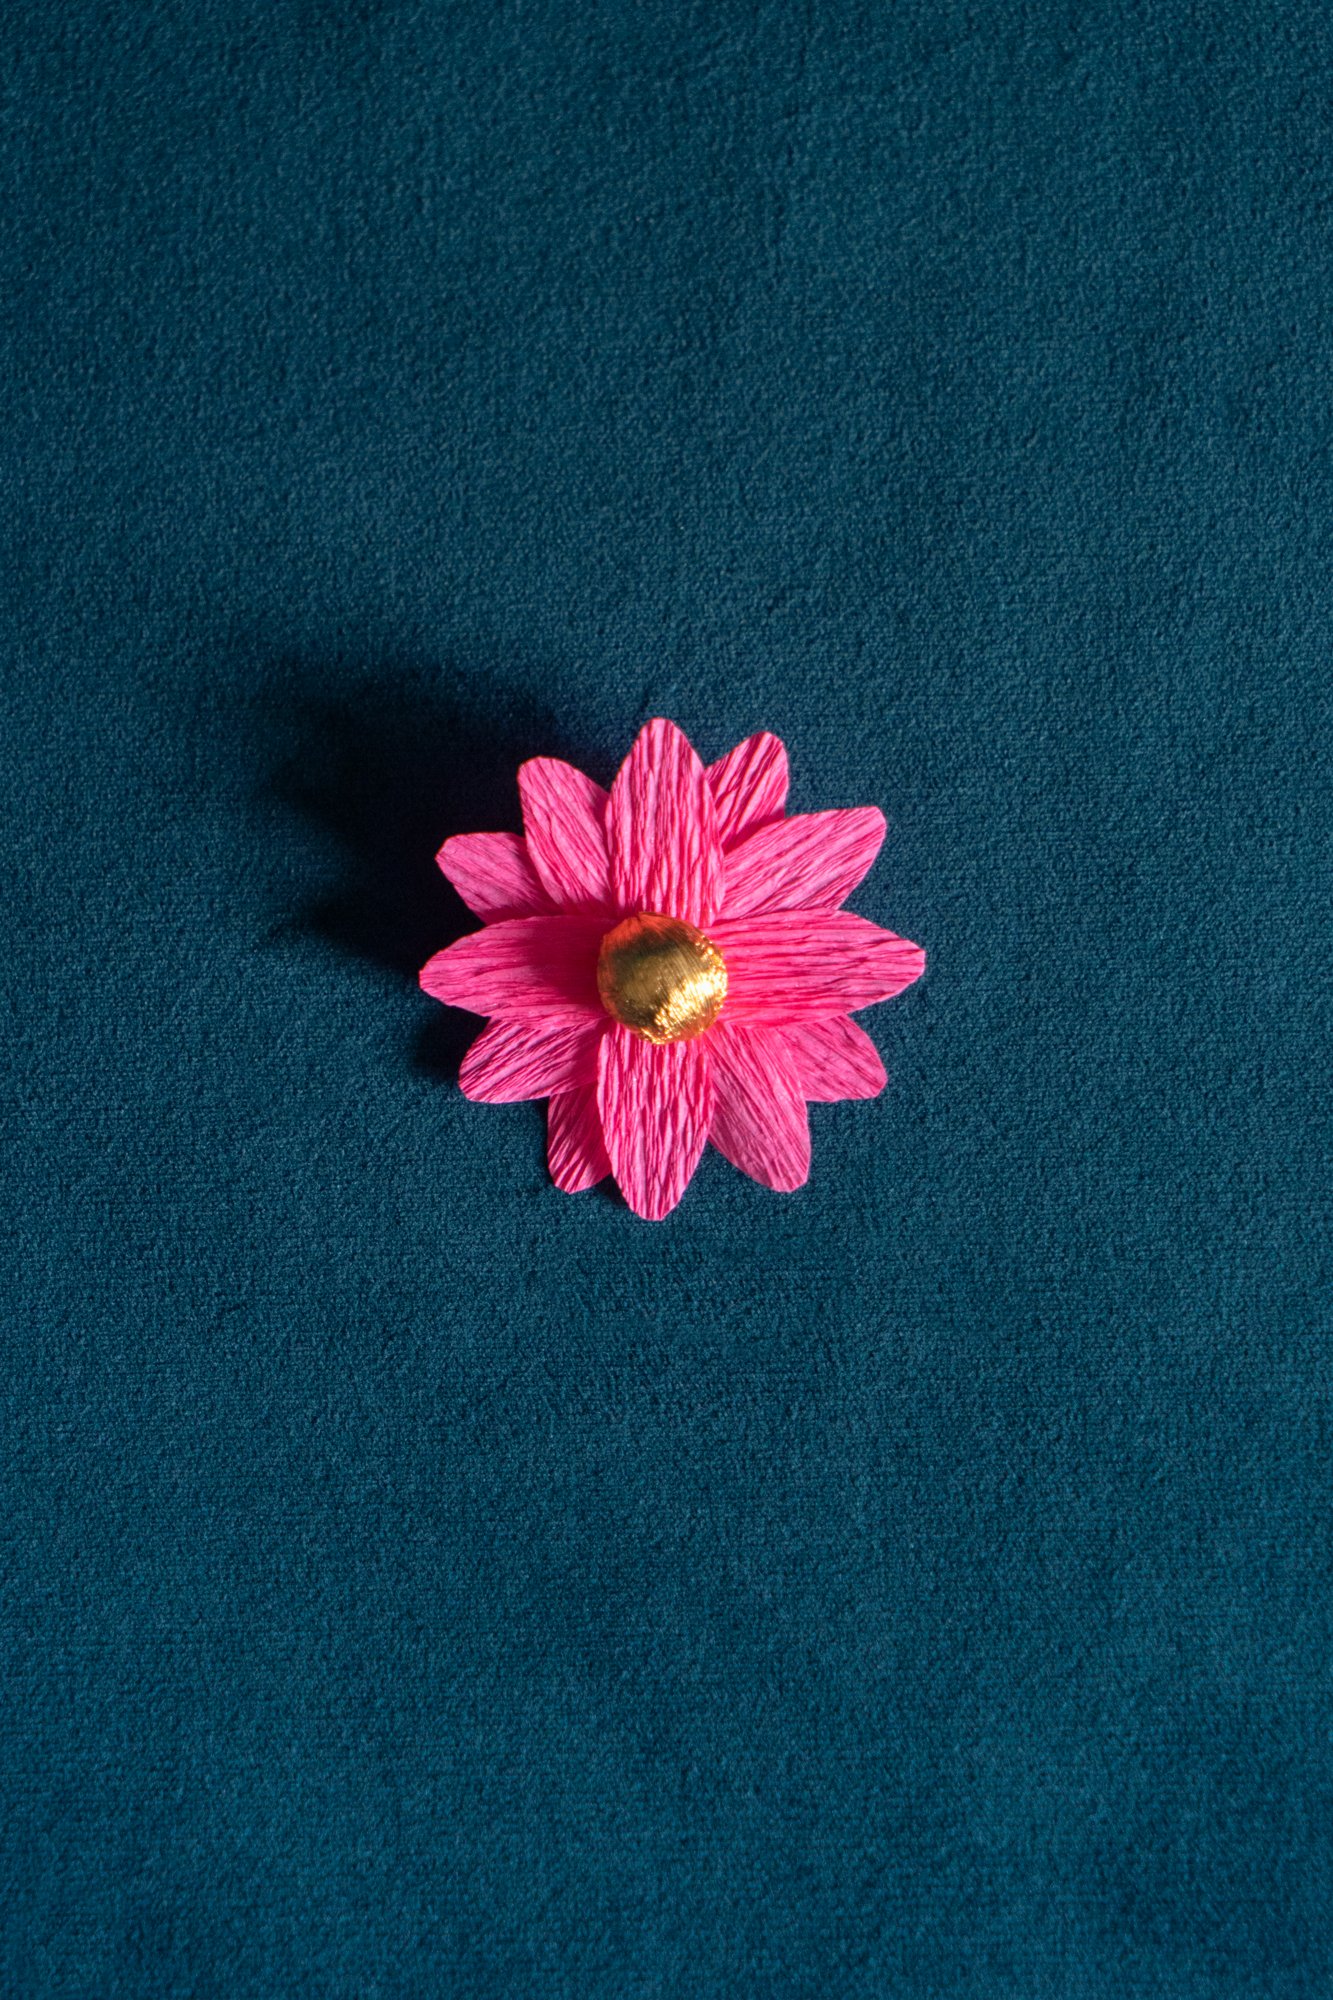 Broche Marguerite de Maison Tessier couleur Rose coeur Or, sur tissus velour émeraude